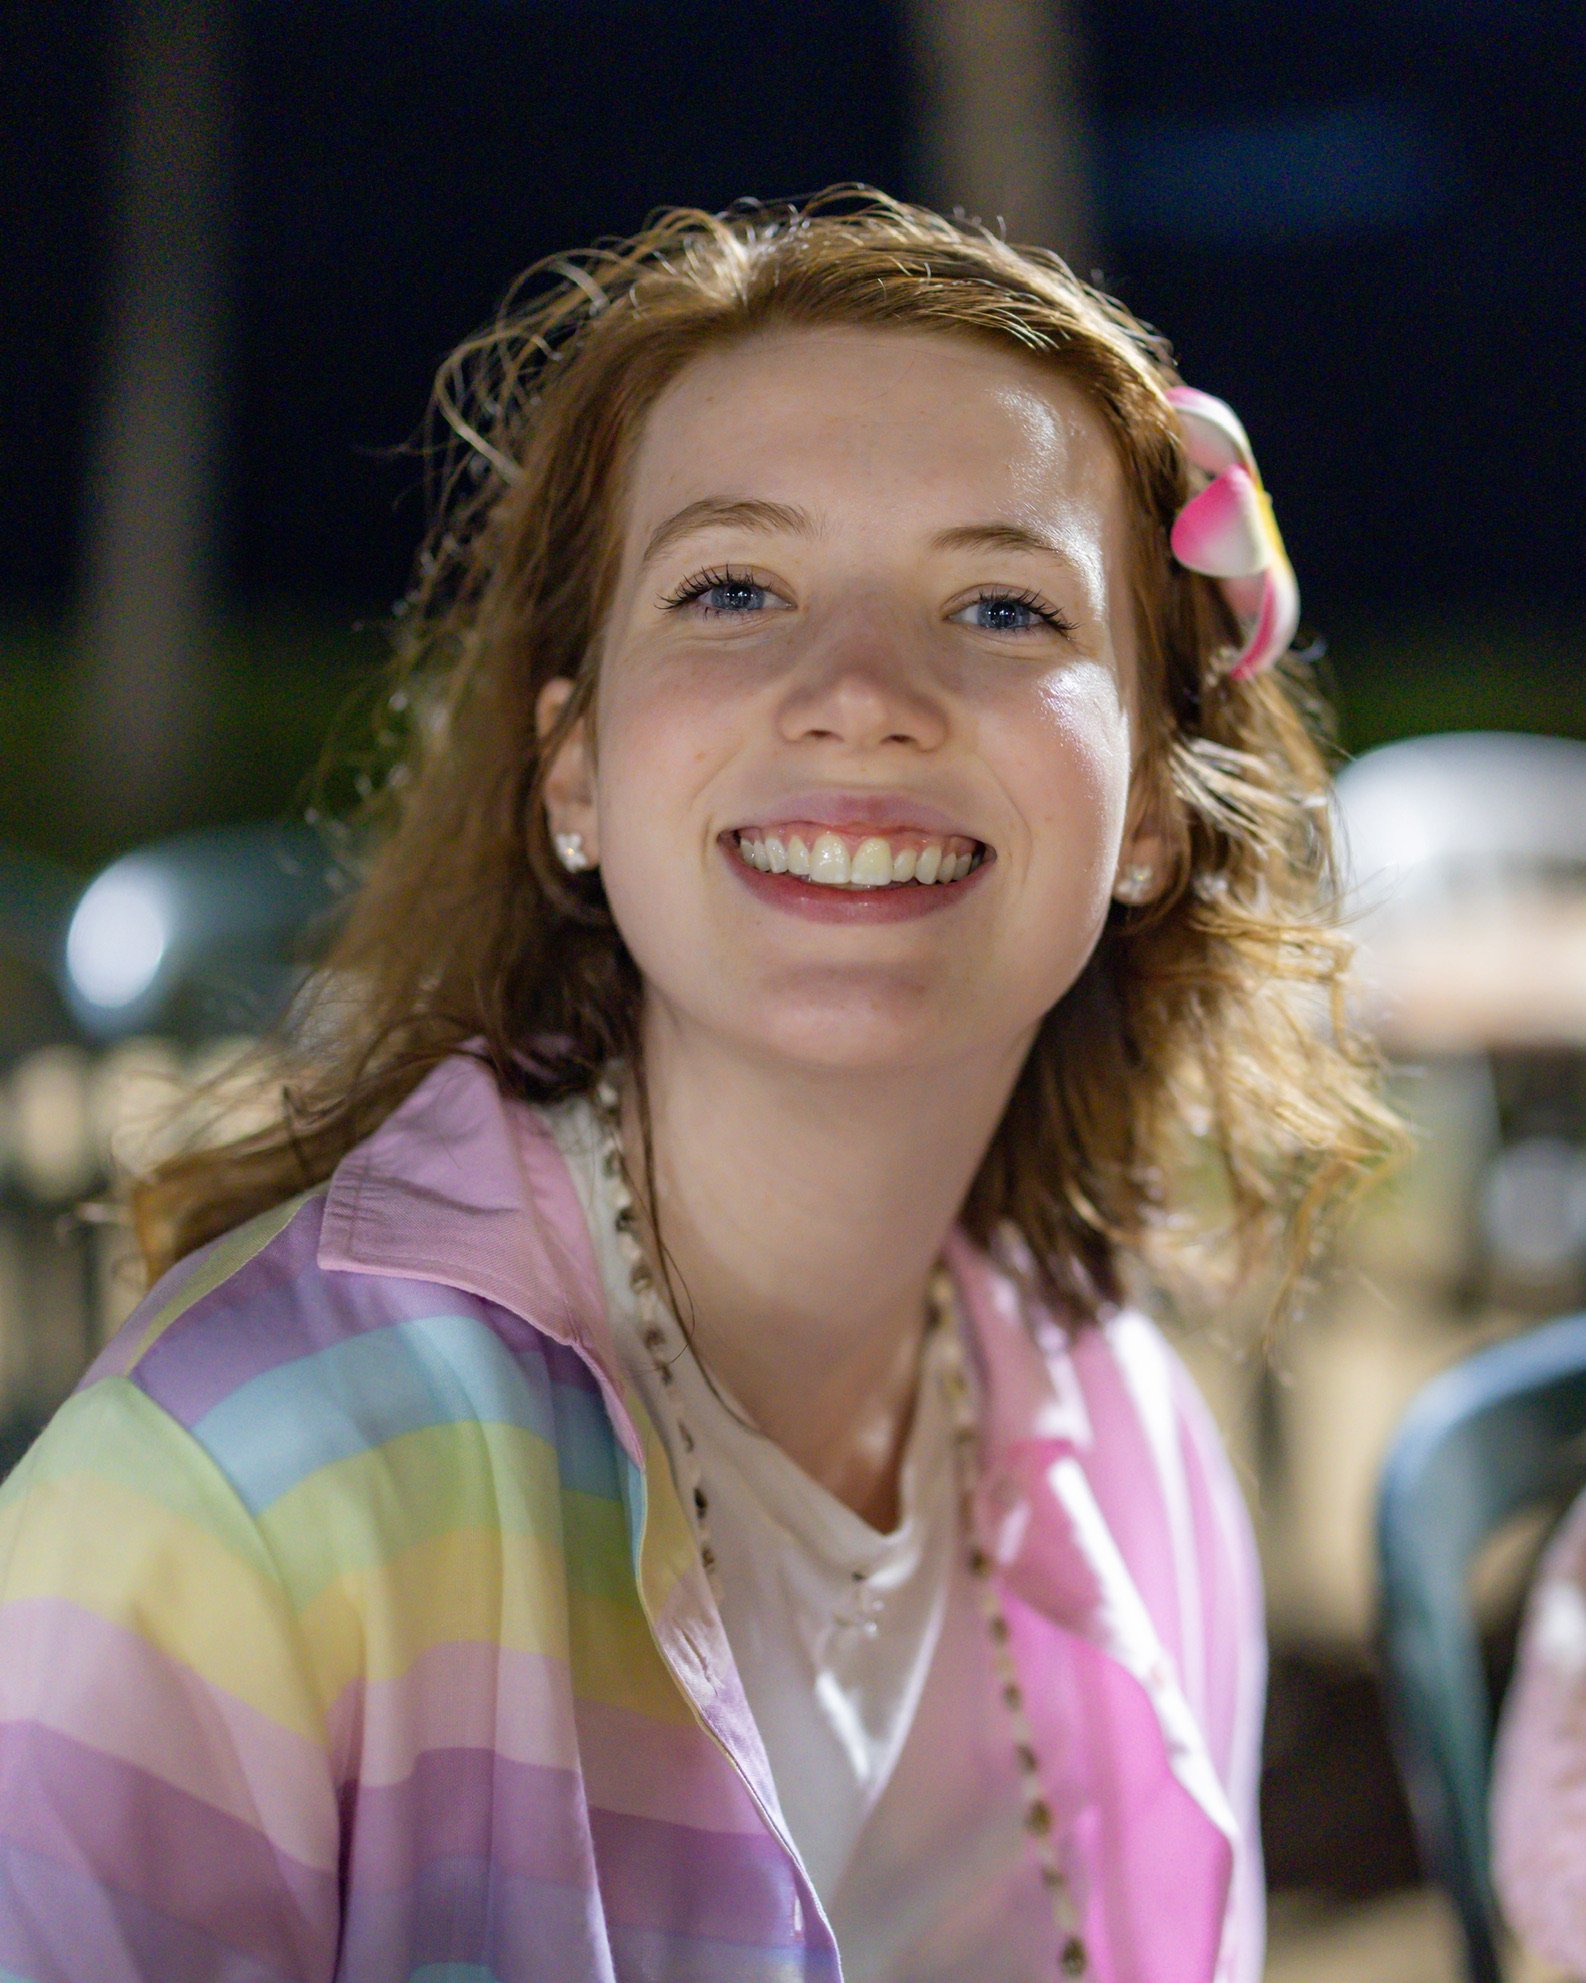 Megan Whitemarsh as Candlemaker, Female Villager